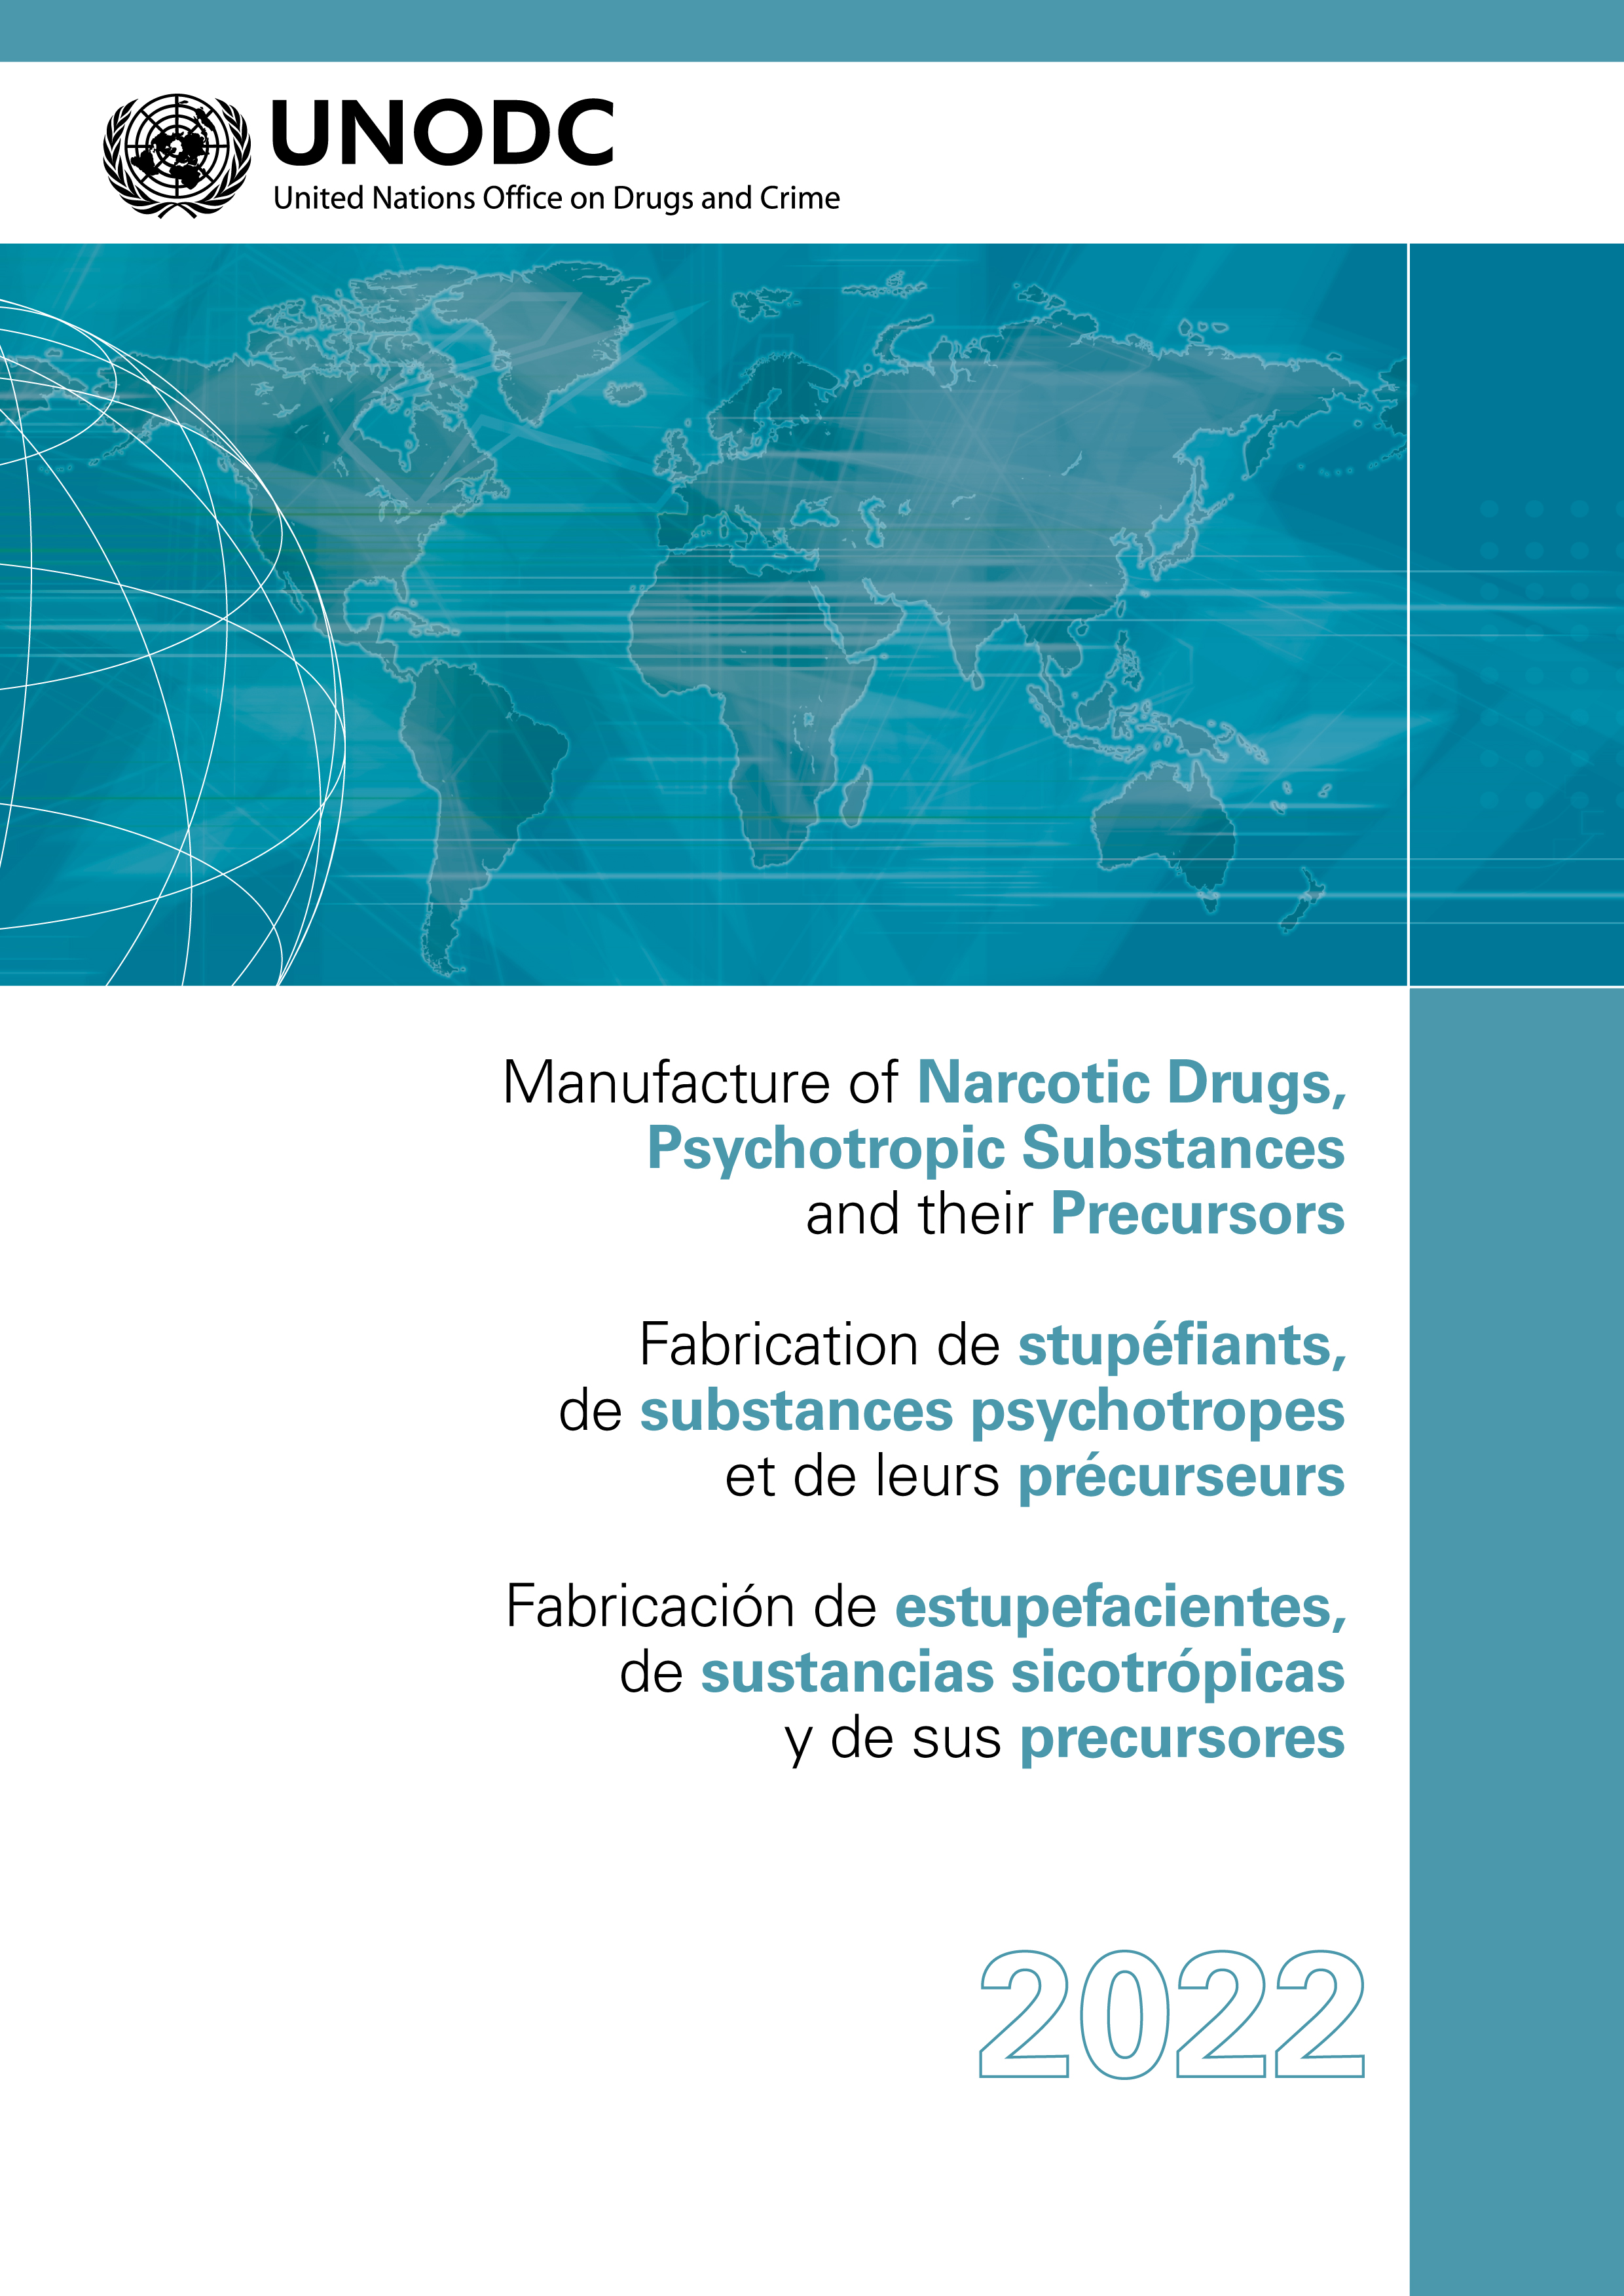 image of Fabricación de estupefacientes, de sustancias sicotrópicas y de sus precursores 2022